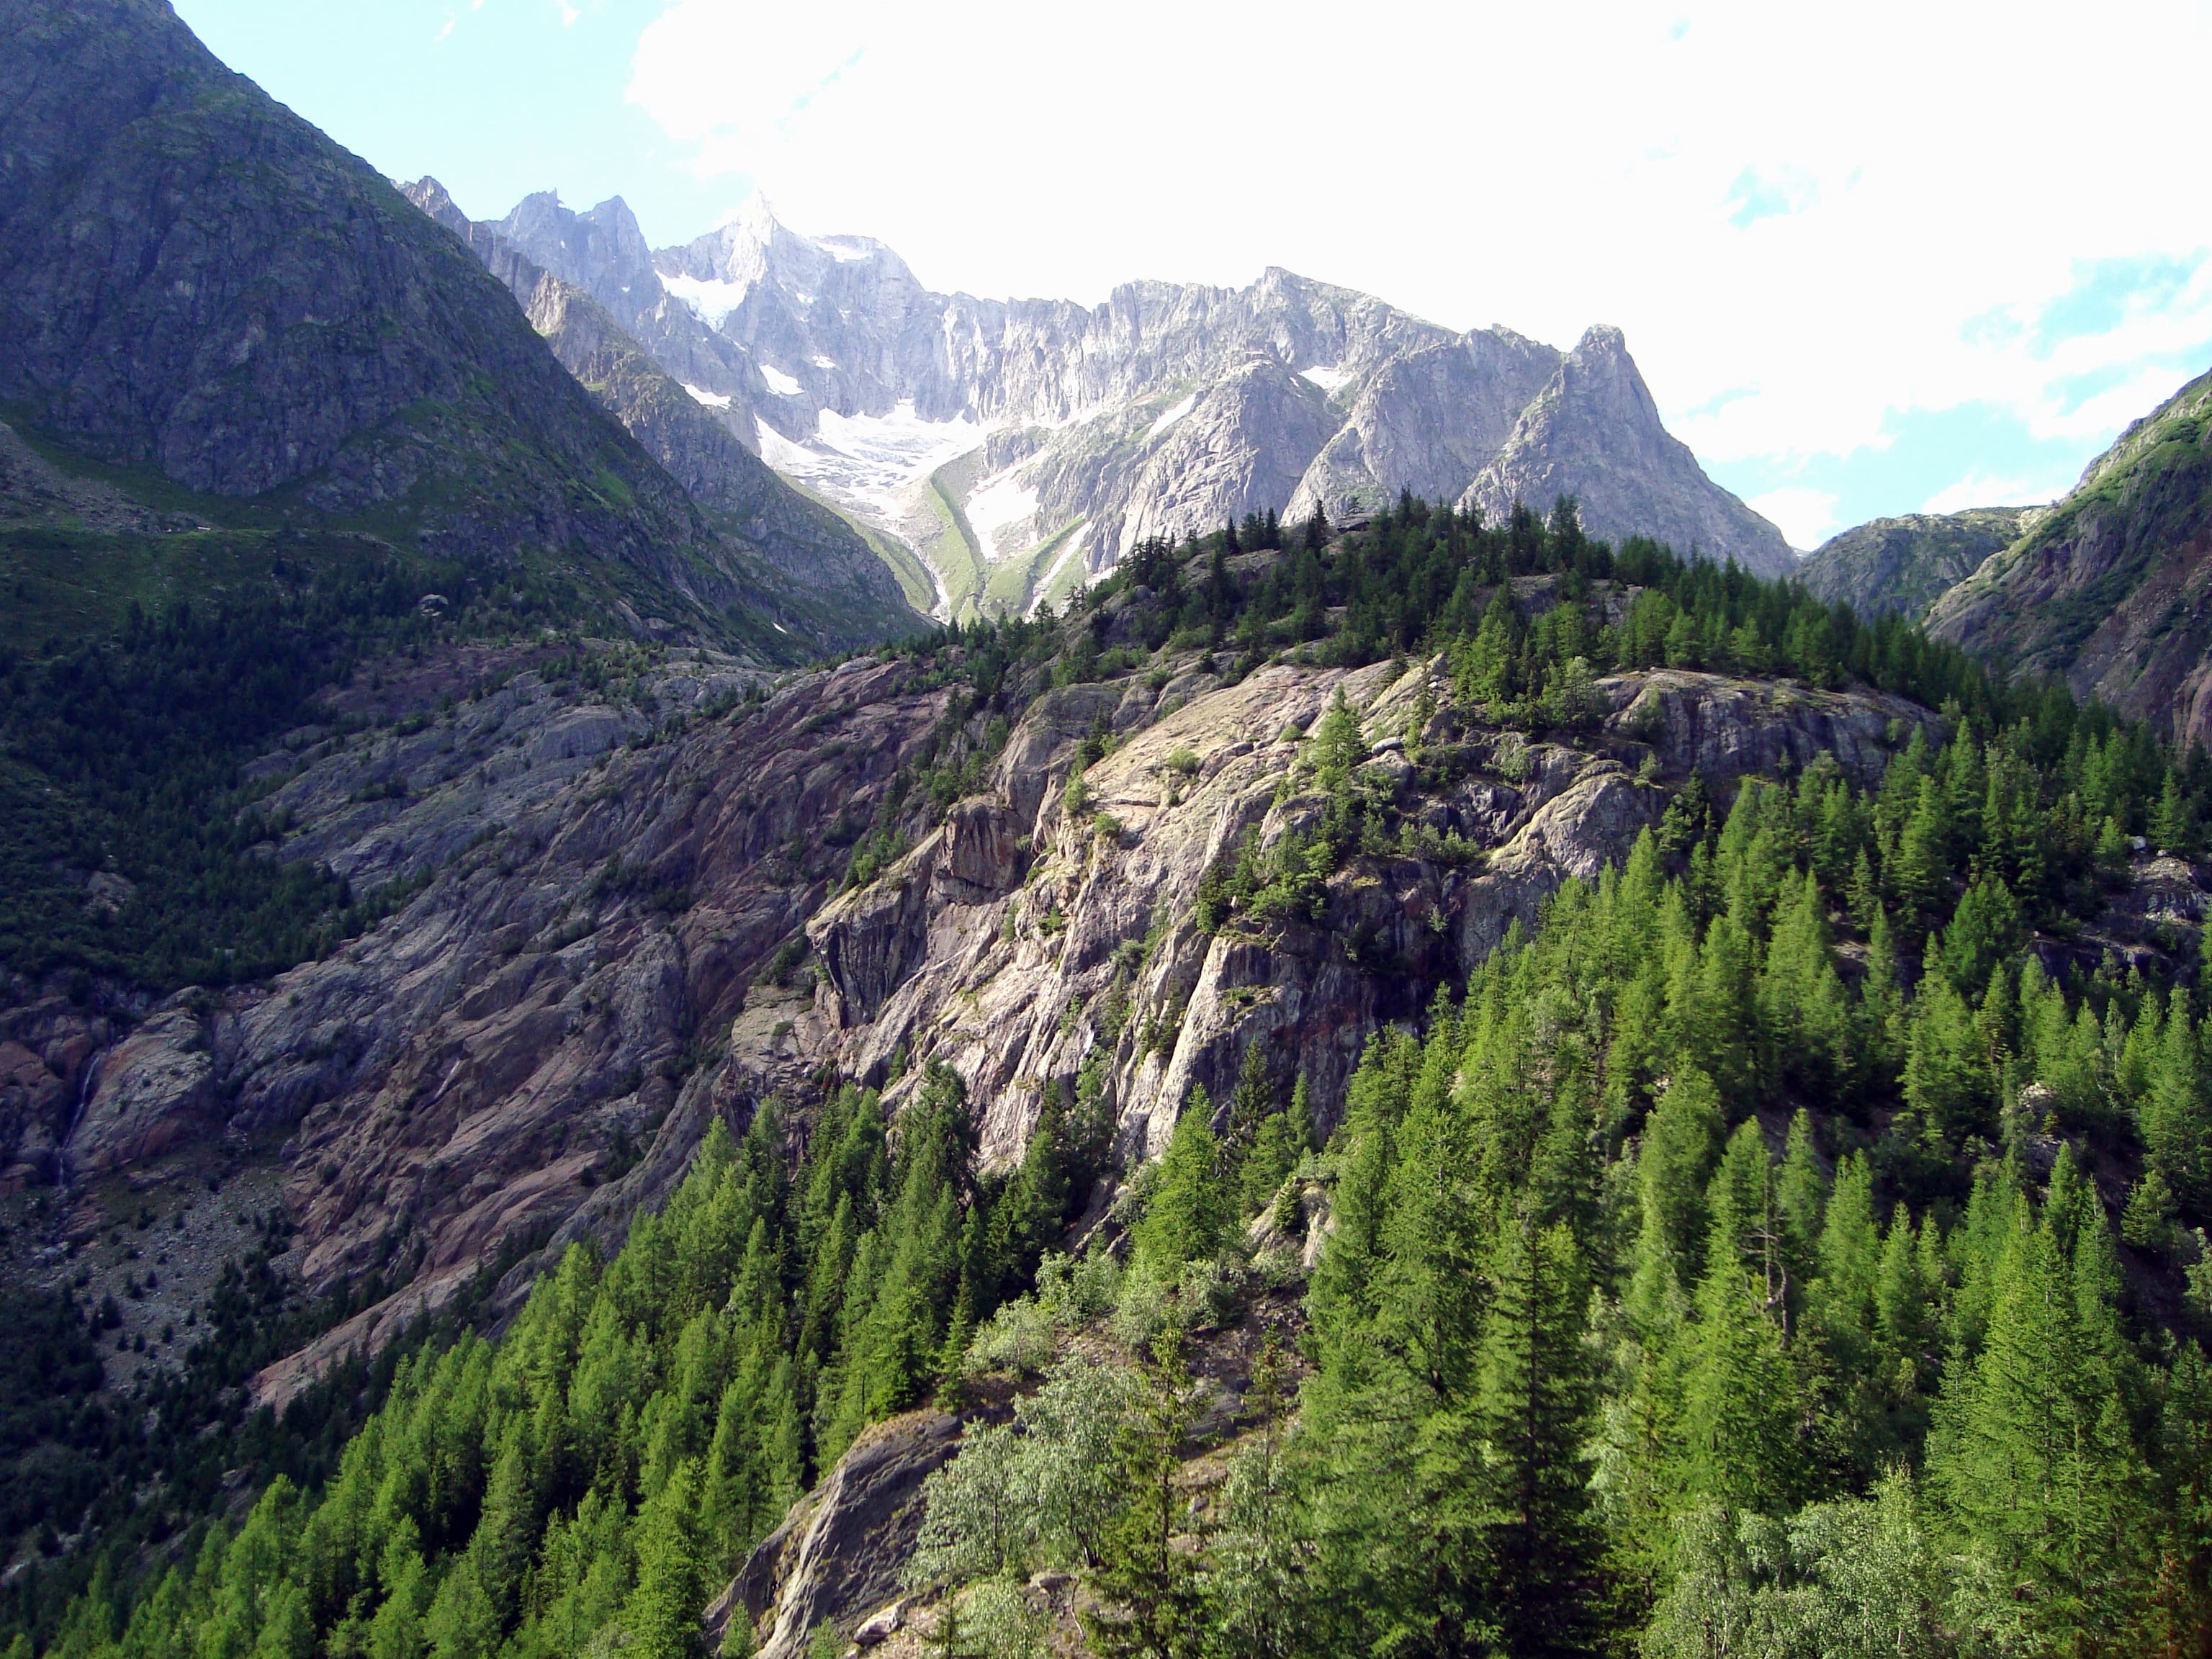 Wunderbar gelegen liegt das Klettergebiet inmitten von Lärchenwäldern.